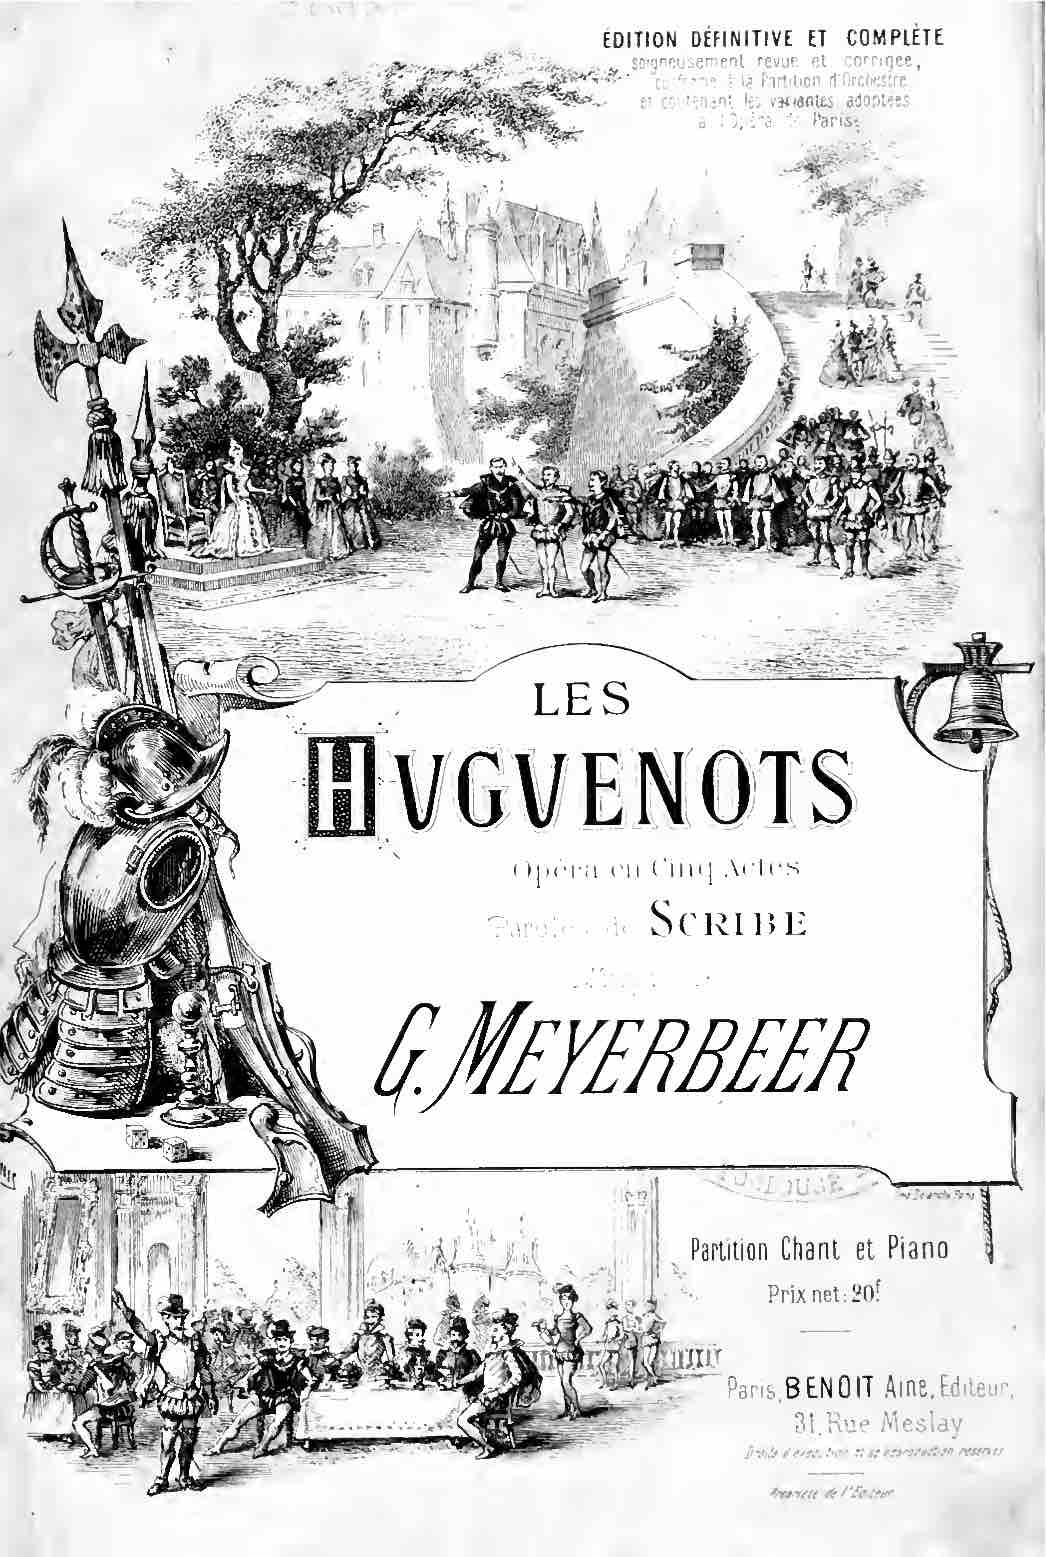 Les_Huguenots_-_vocal_score_cover_-_Macquet_reprint_(after_1888)_IMSLP72250.jpg